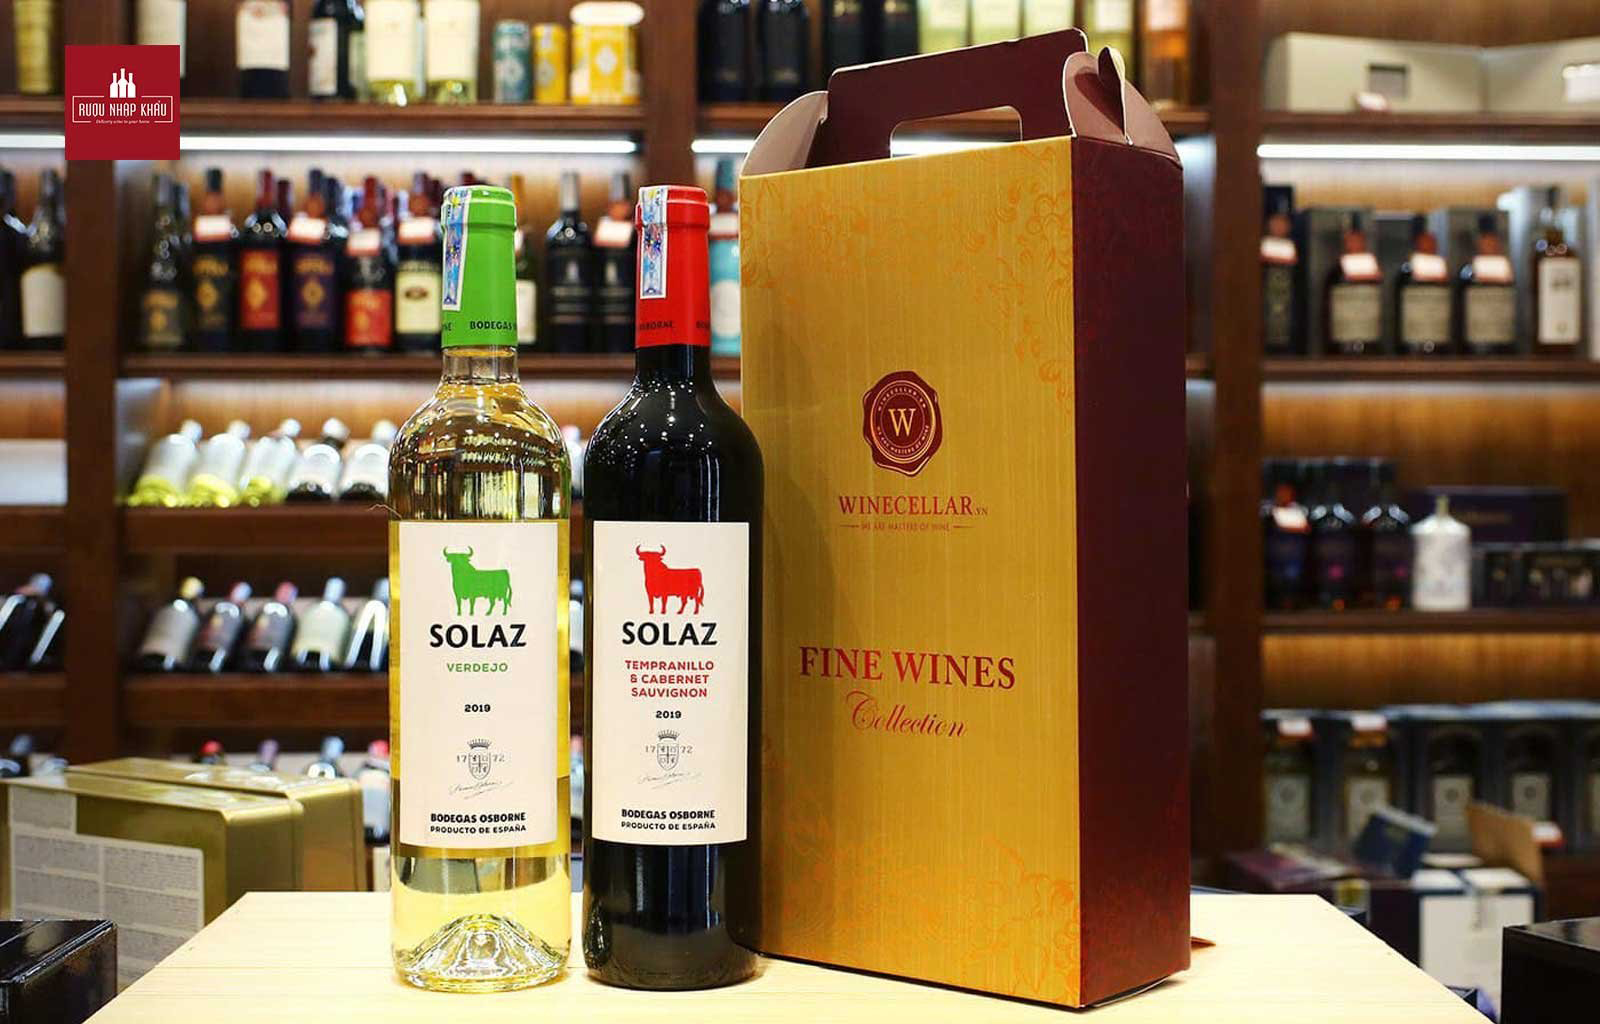 Gợi ý cặp rượu vang làm quà tặng mùa Giáng Sinh - Solaz Verdejo & Solaz Tempranillo Cabernet Sauvignon